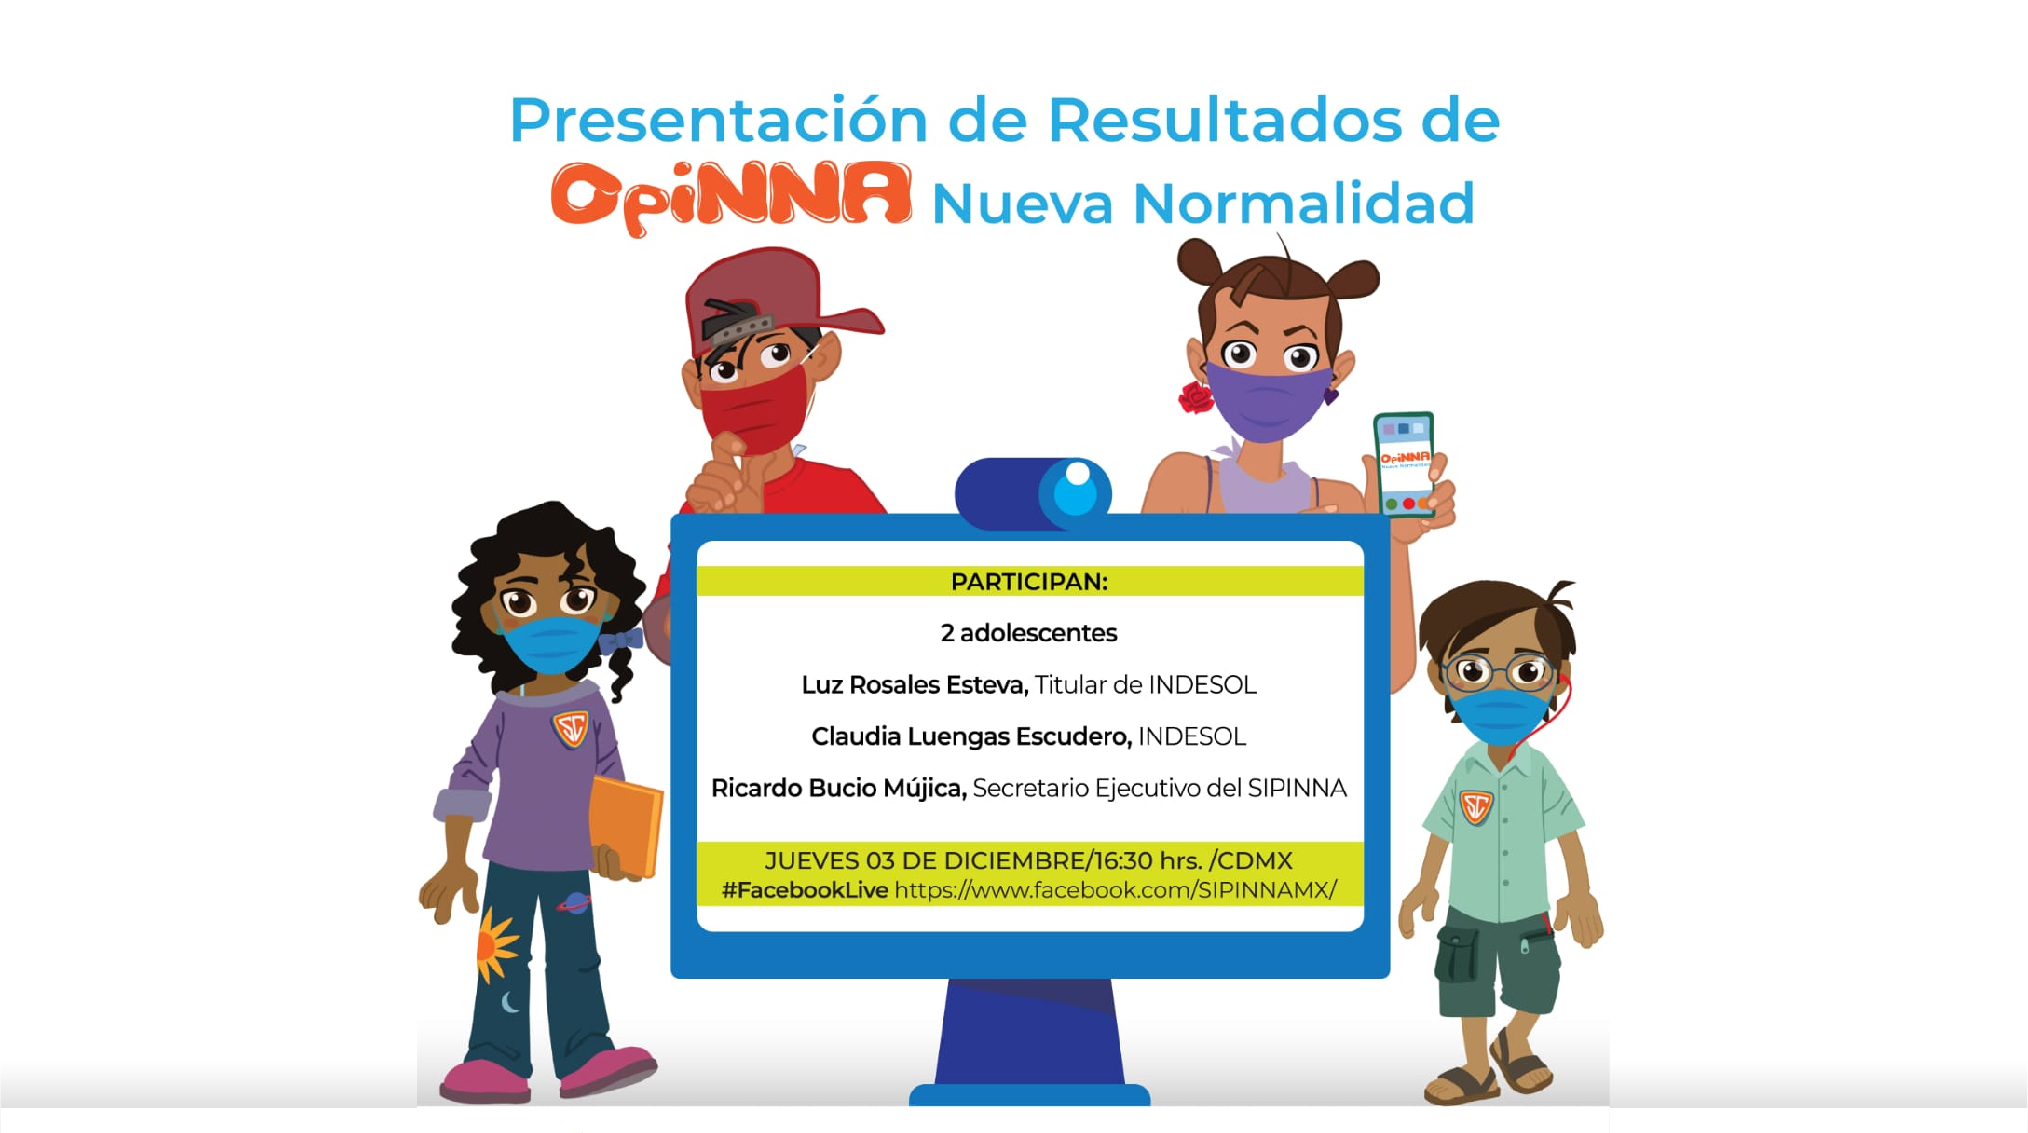 Presentación de Resultados de Opinna Nueva Normalidad. 